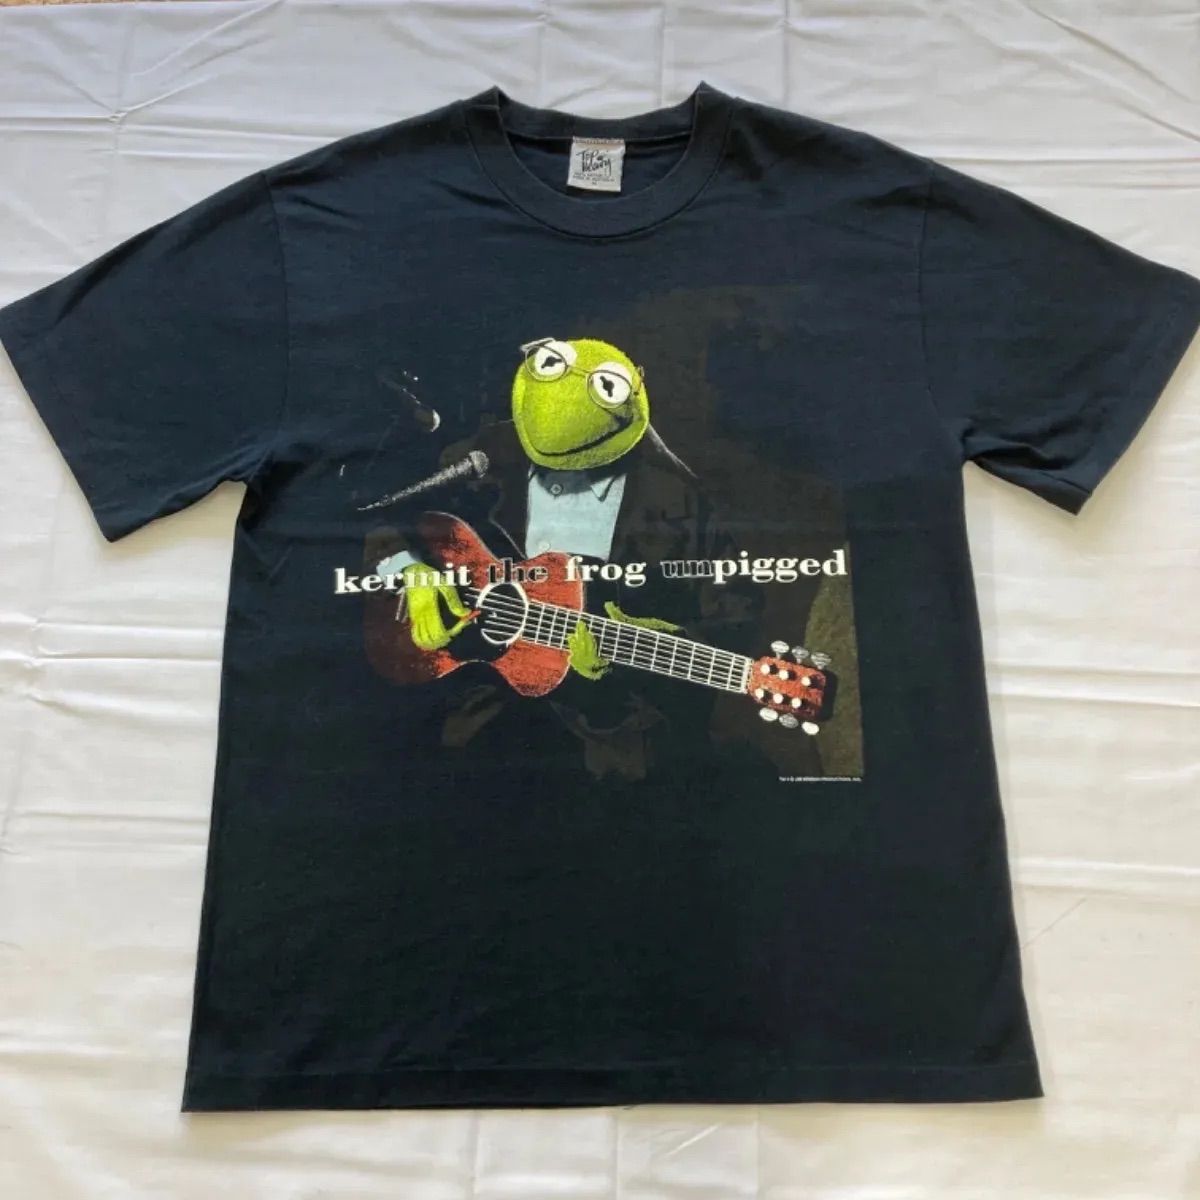 kermit the frog unpigged カーミット コットン Tシャツ ギター ブラック 黒 オーストラリア JIM HENSON MM